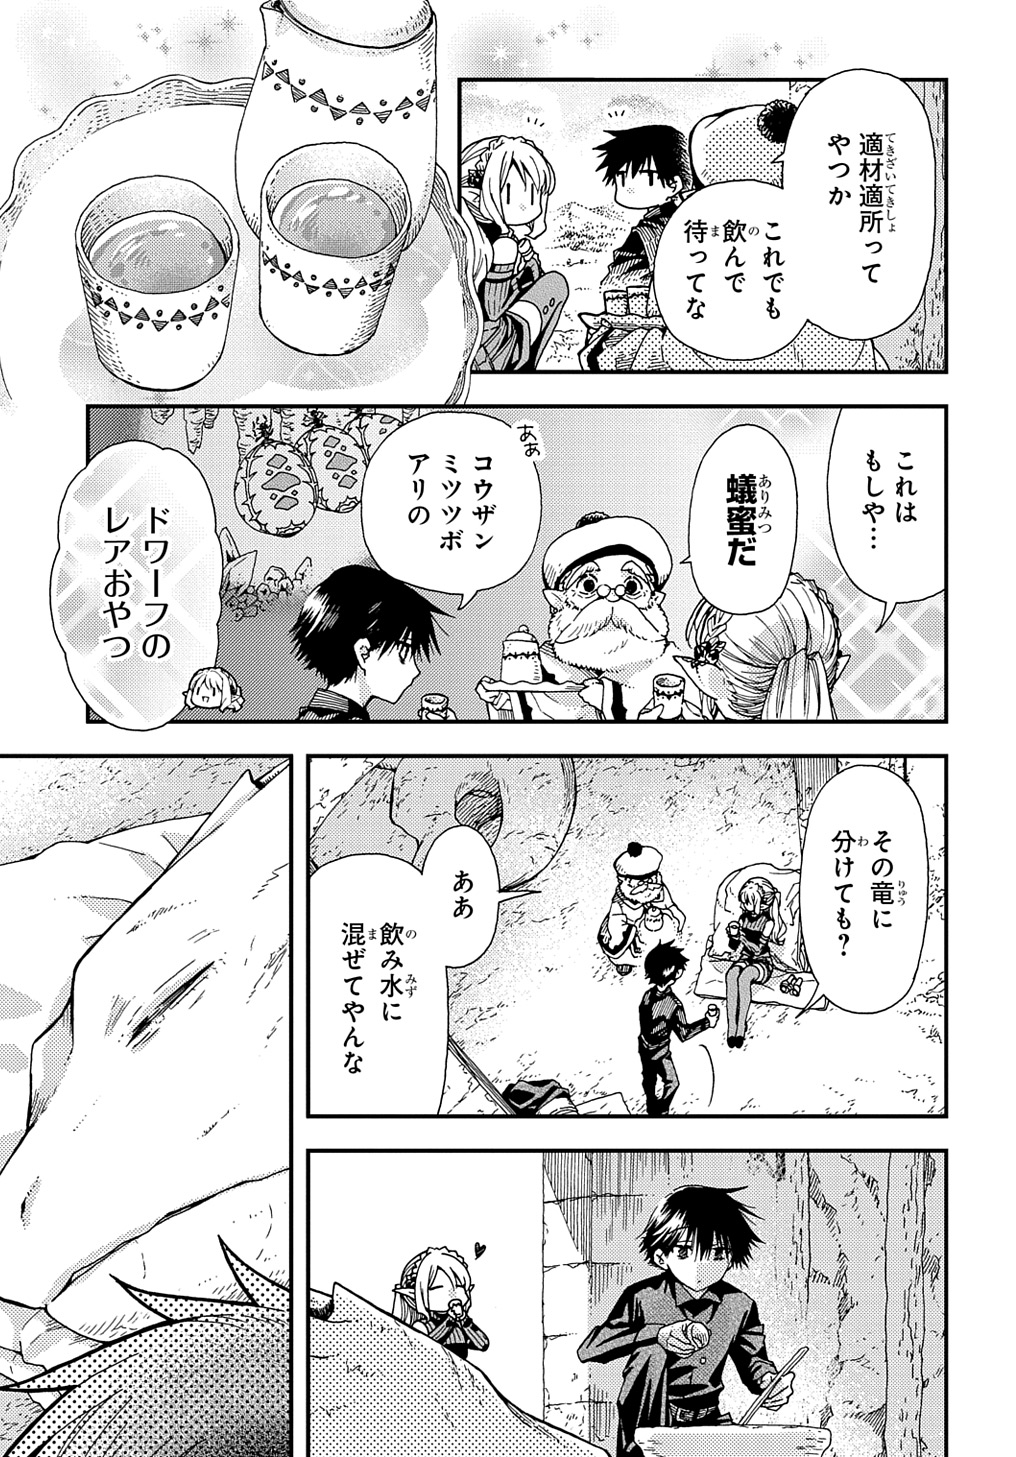 Hone Dragon no Mana Musume - Chapter 31 - Page 3